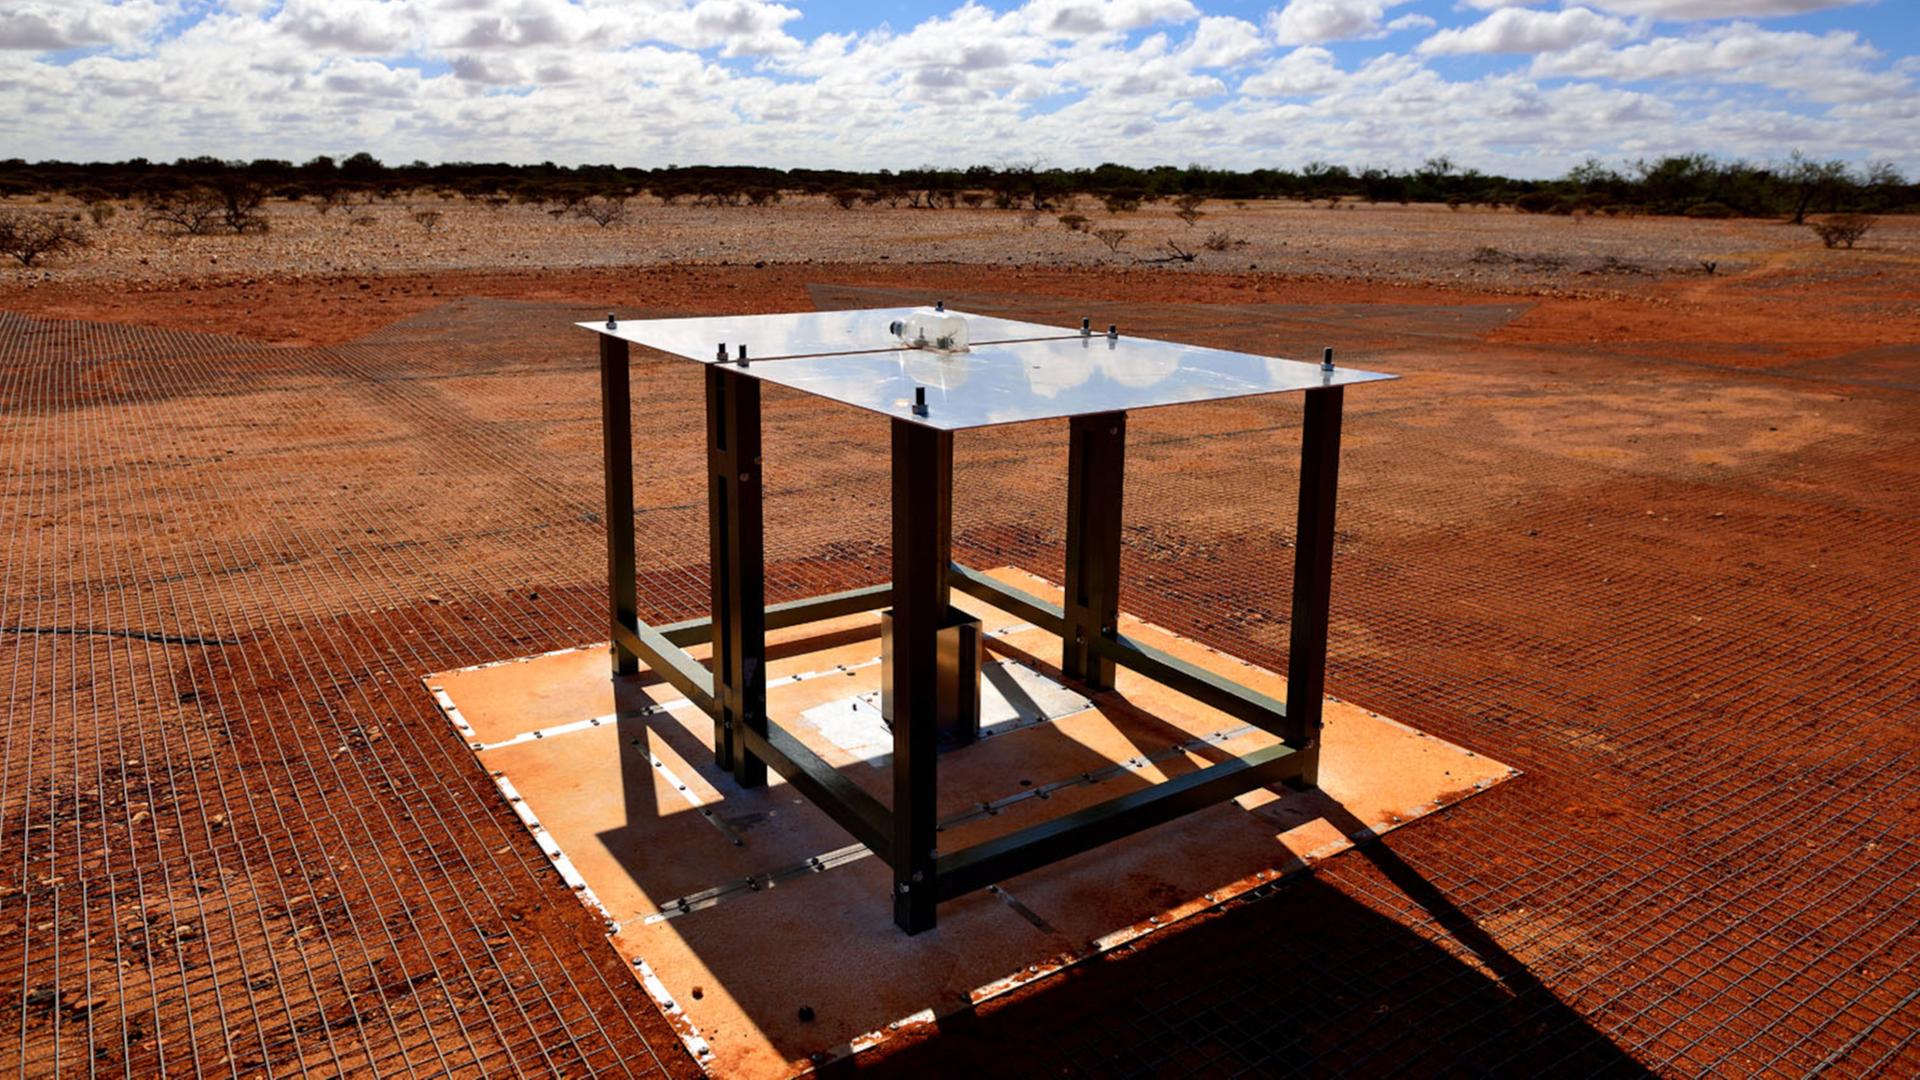 Sensation vom Tisch? Das EDGES-Instrument in Australien hatte 2018 vermeintlich die Strahlung der ersten Sterne im All nachgewiesen.            